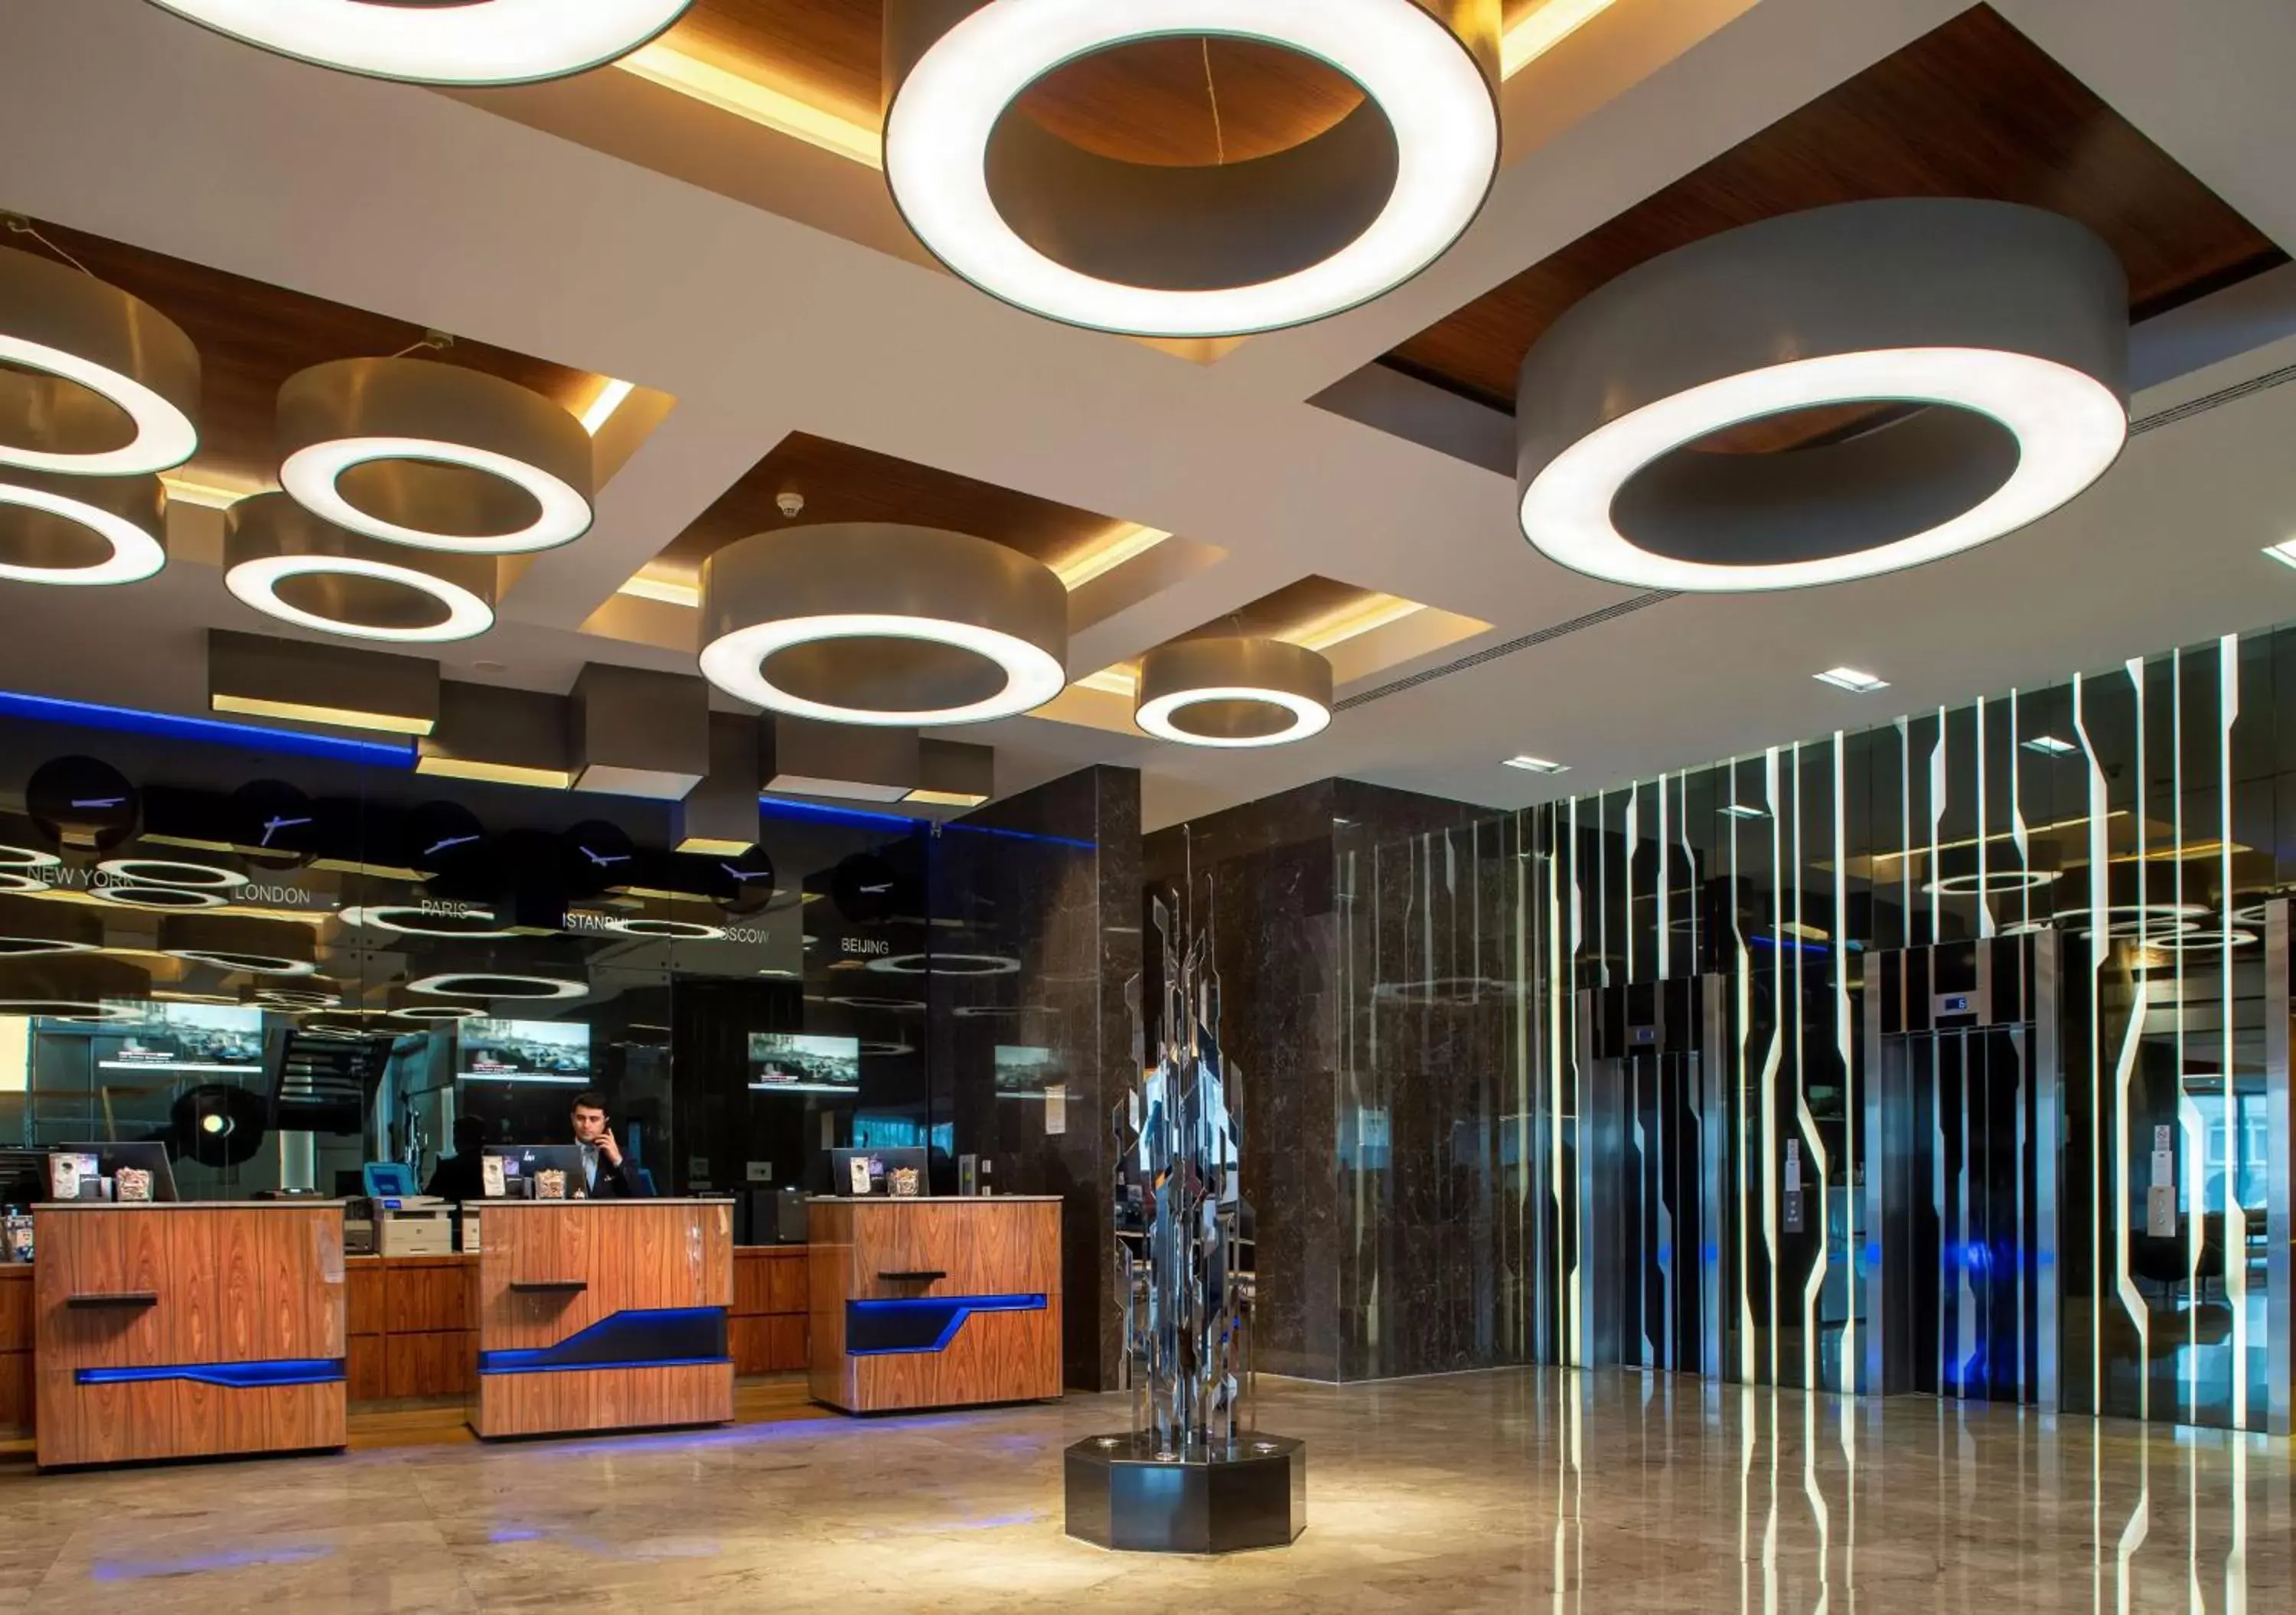 Lobby or reception in Radisson Blu Hotel Istanbul Asia